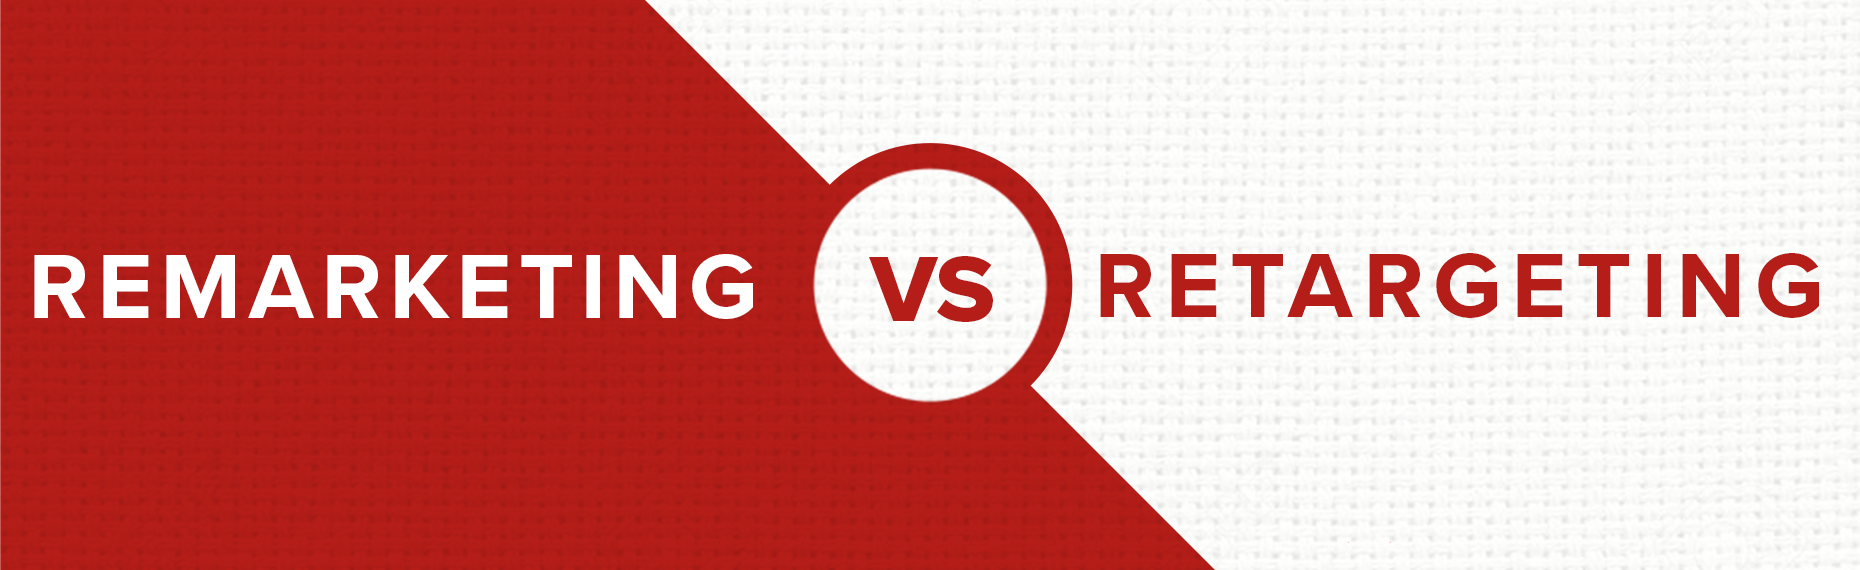 remarketing vs retargeting